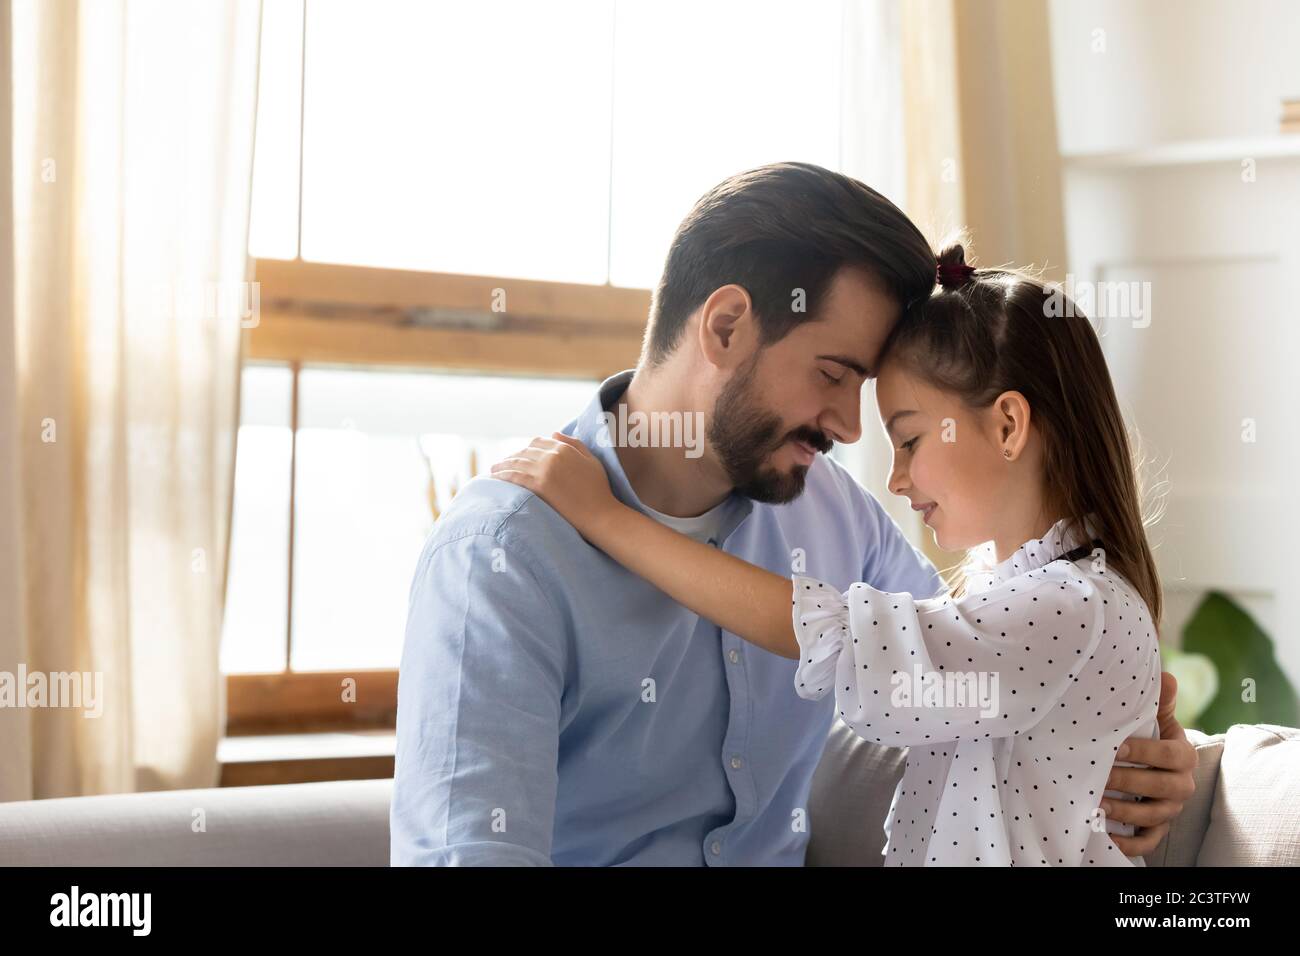 Père aimant et petite fille touchant les fronts, profitant de moments tendres Banque D'Images